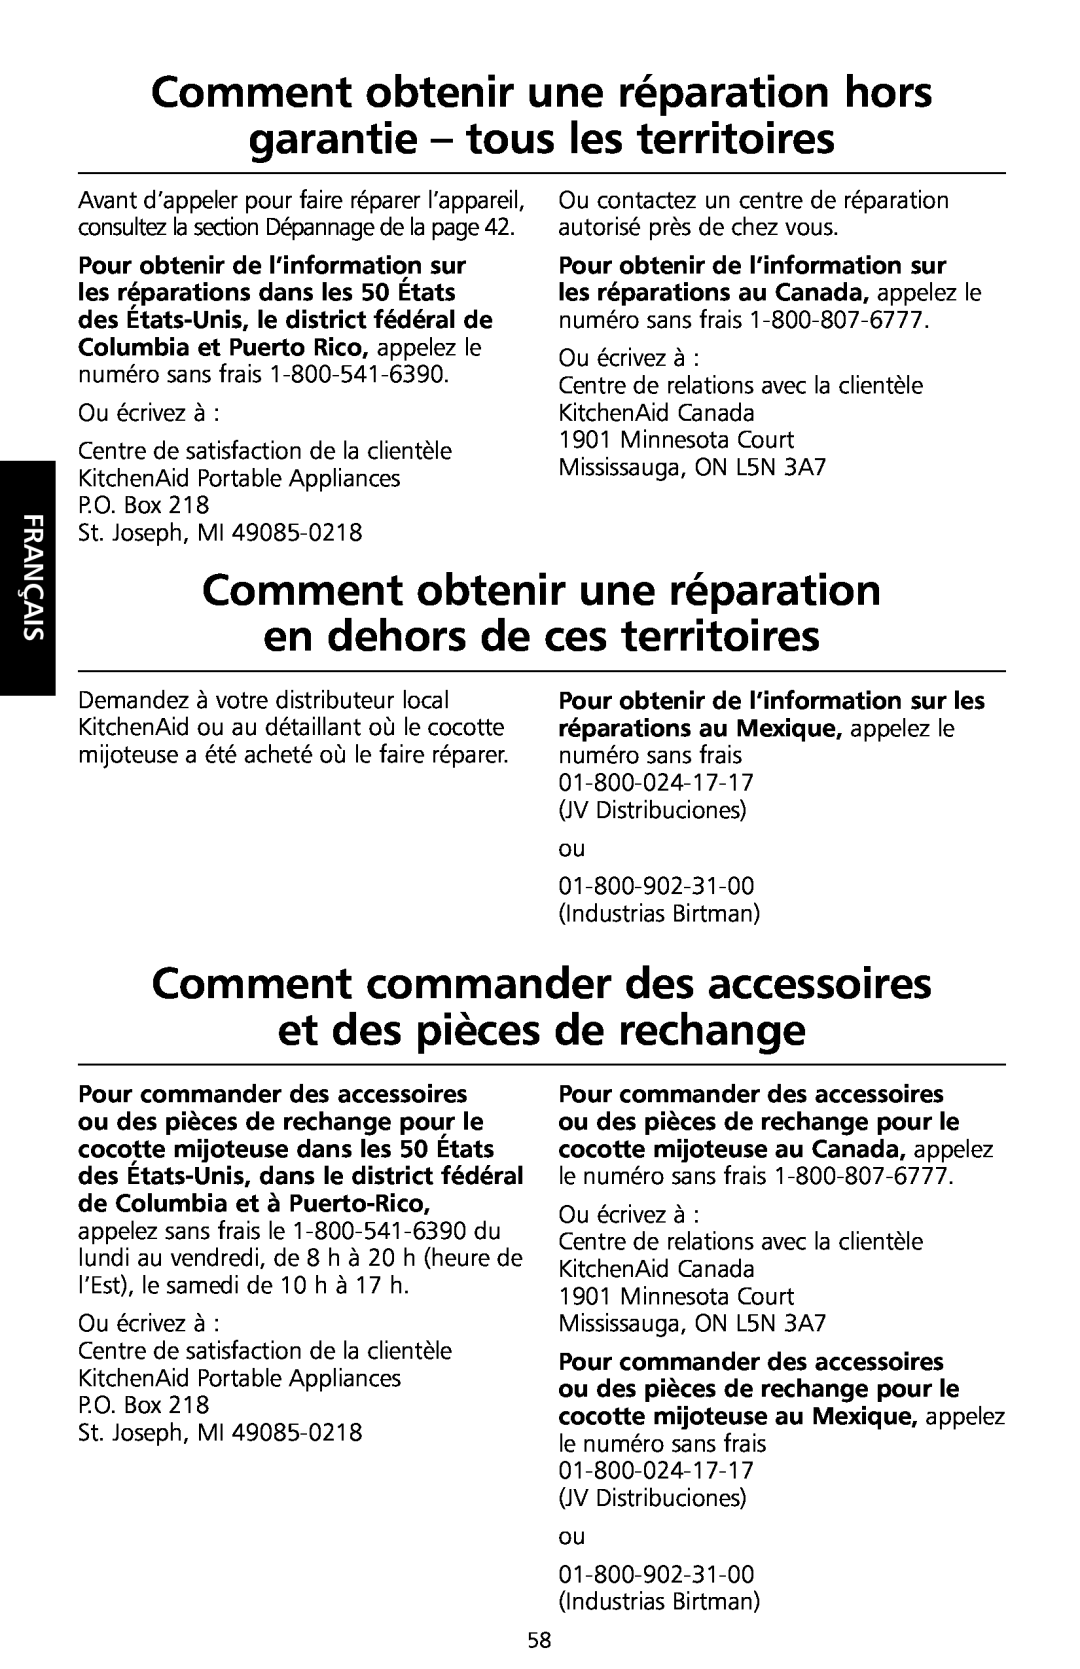 KitchenAid KSC700 manual Comment obtenir une réparation hors garantie - tous les territoires, Français 